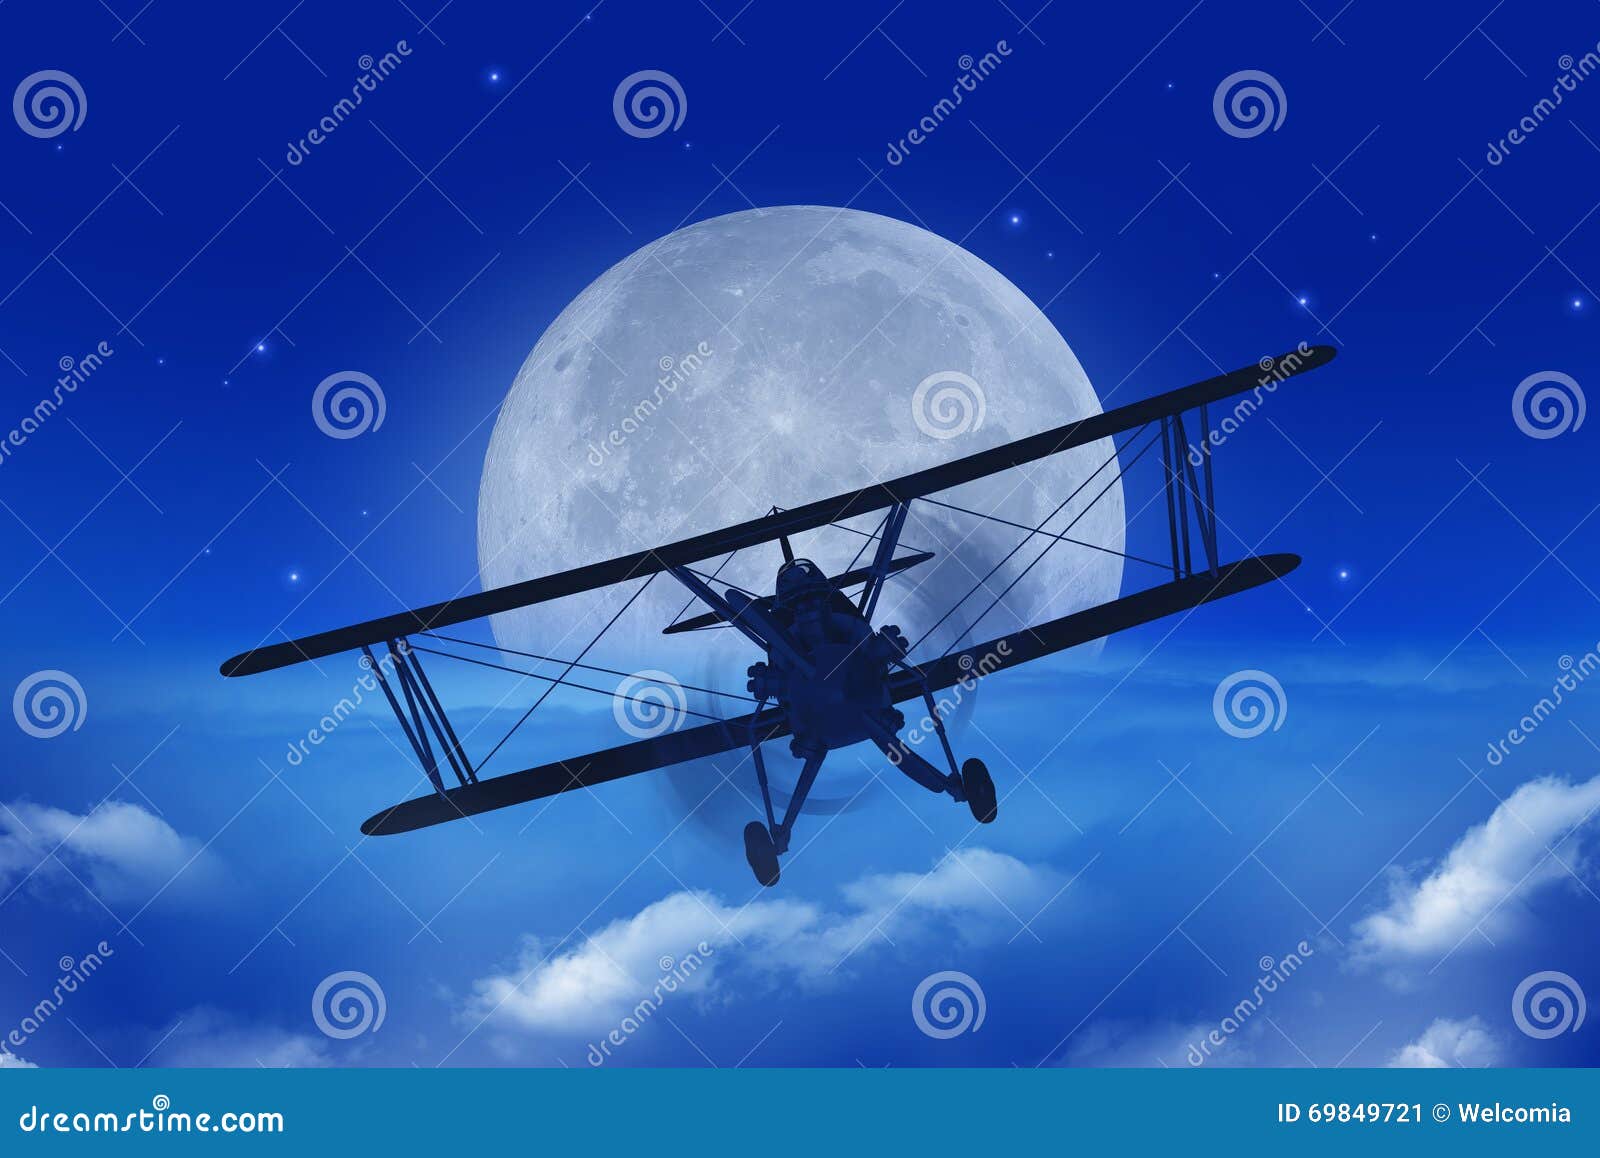 full moon airplane getaway